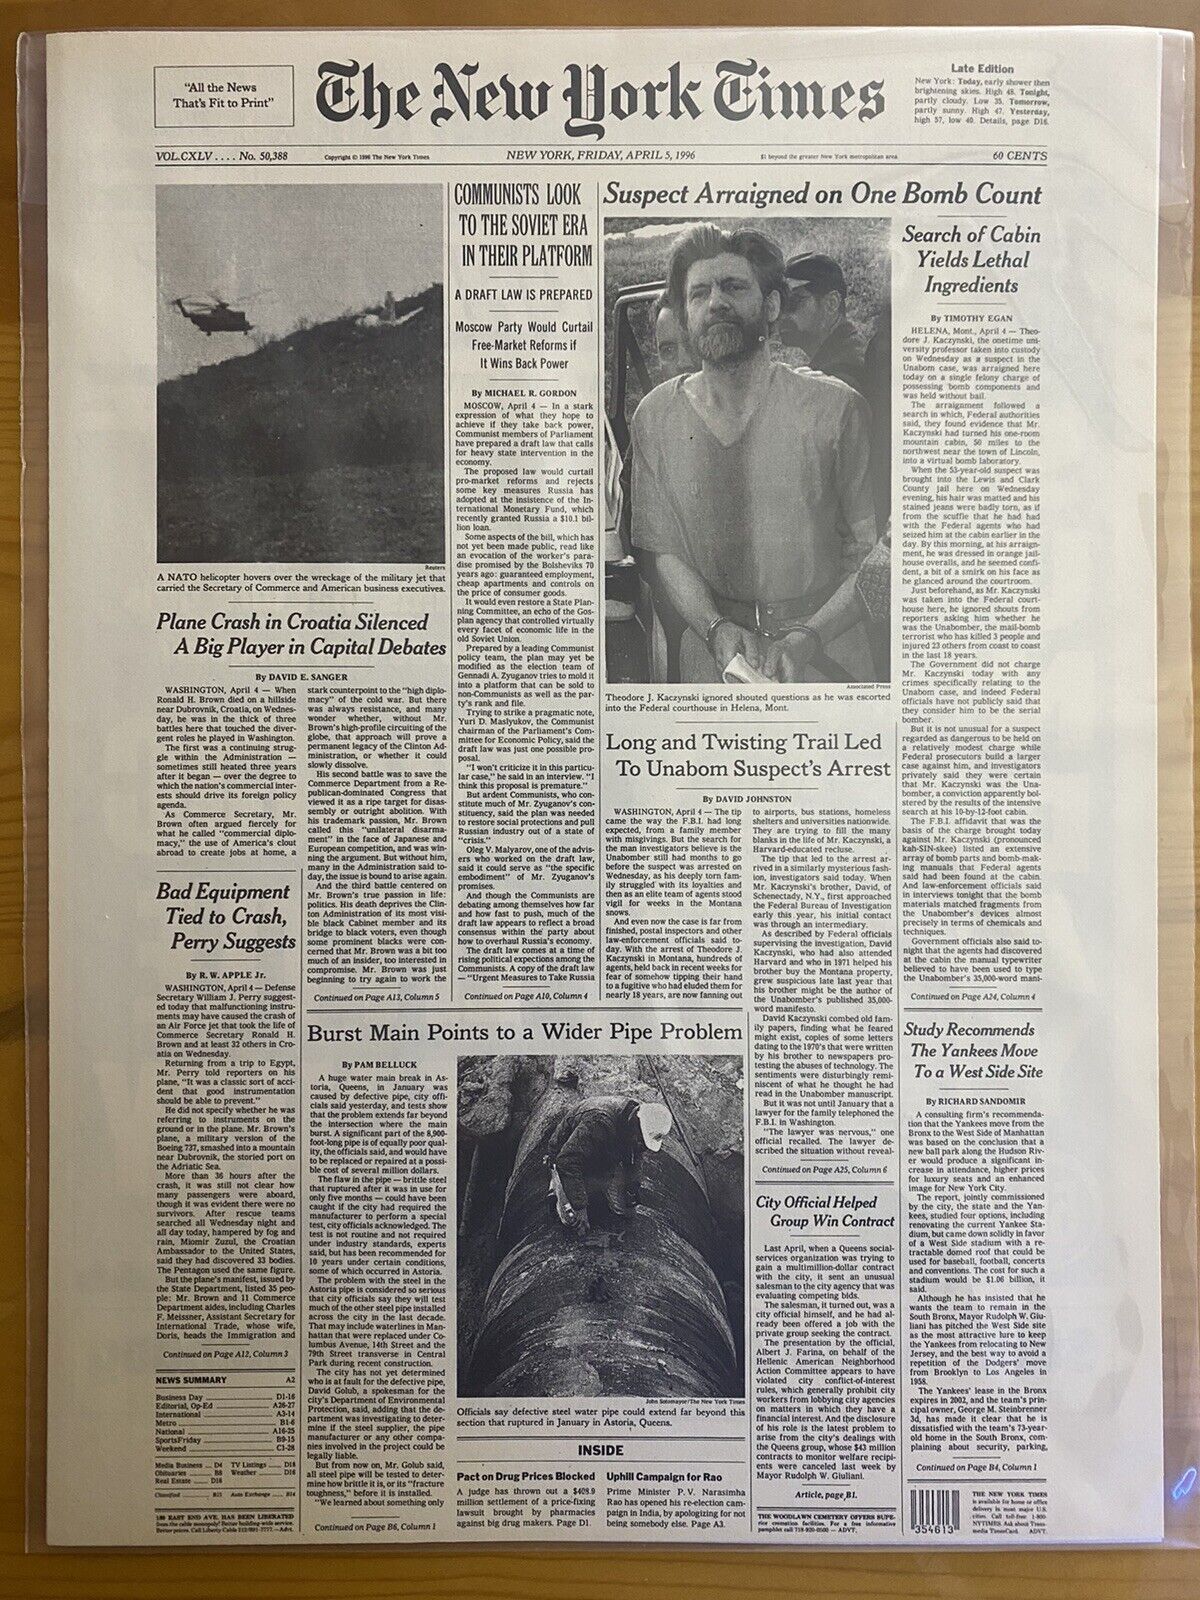 VINTAGE NEWSPAPER HEADLINE ~TERRORIST KILLER TED KACZYNSKI UNABOMBER CAUGHT 1996